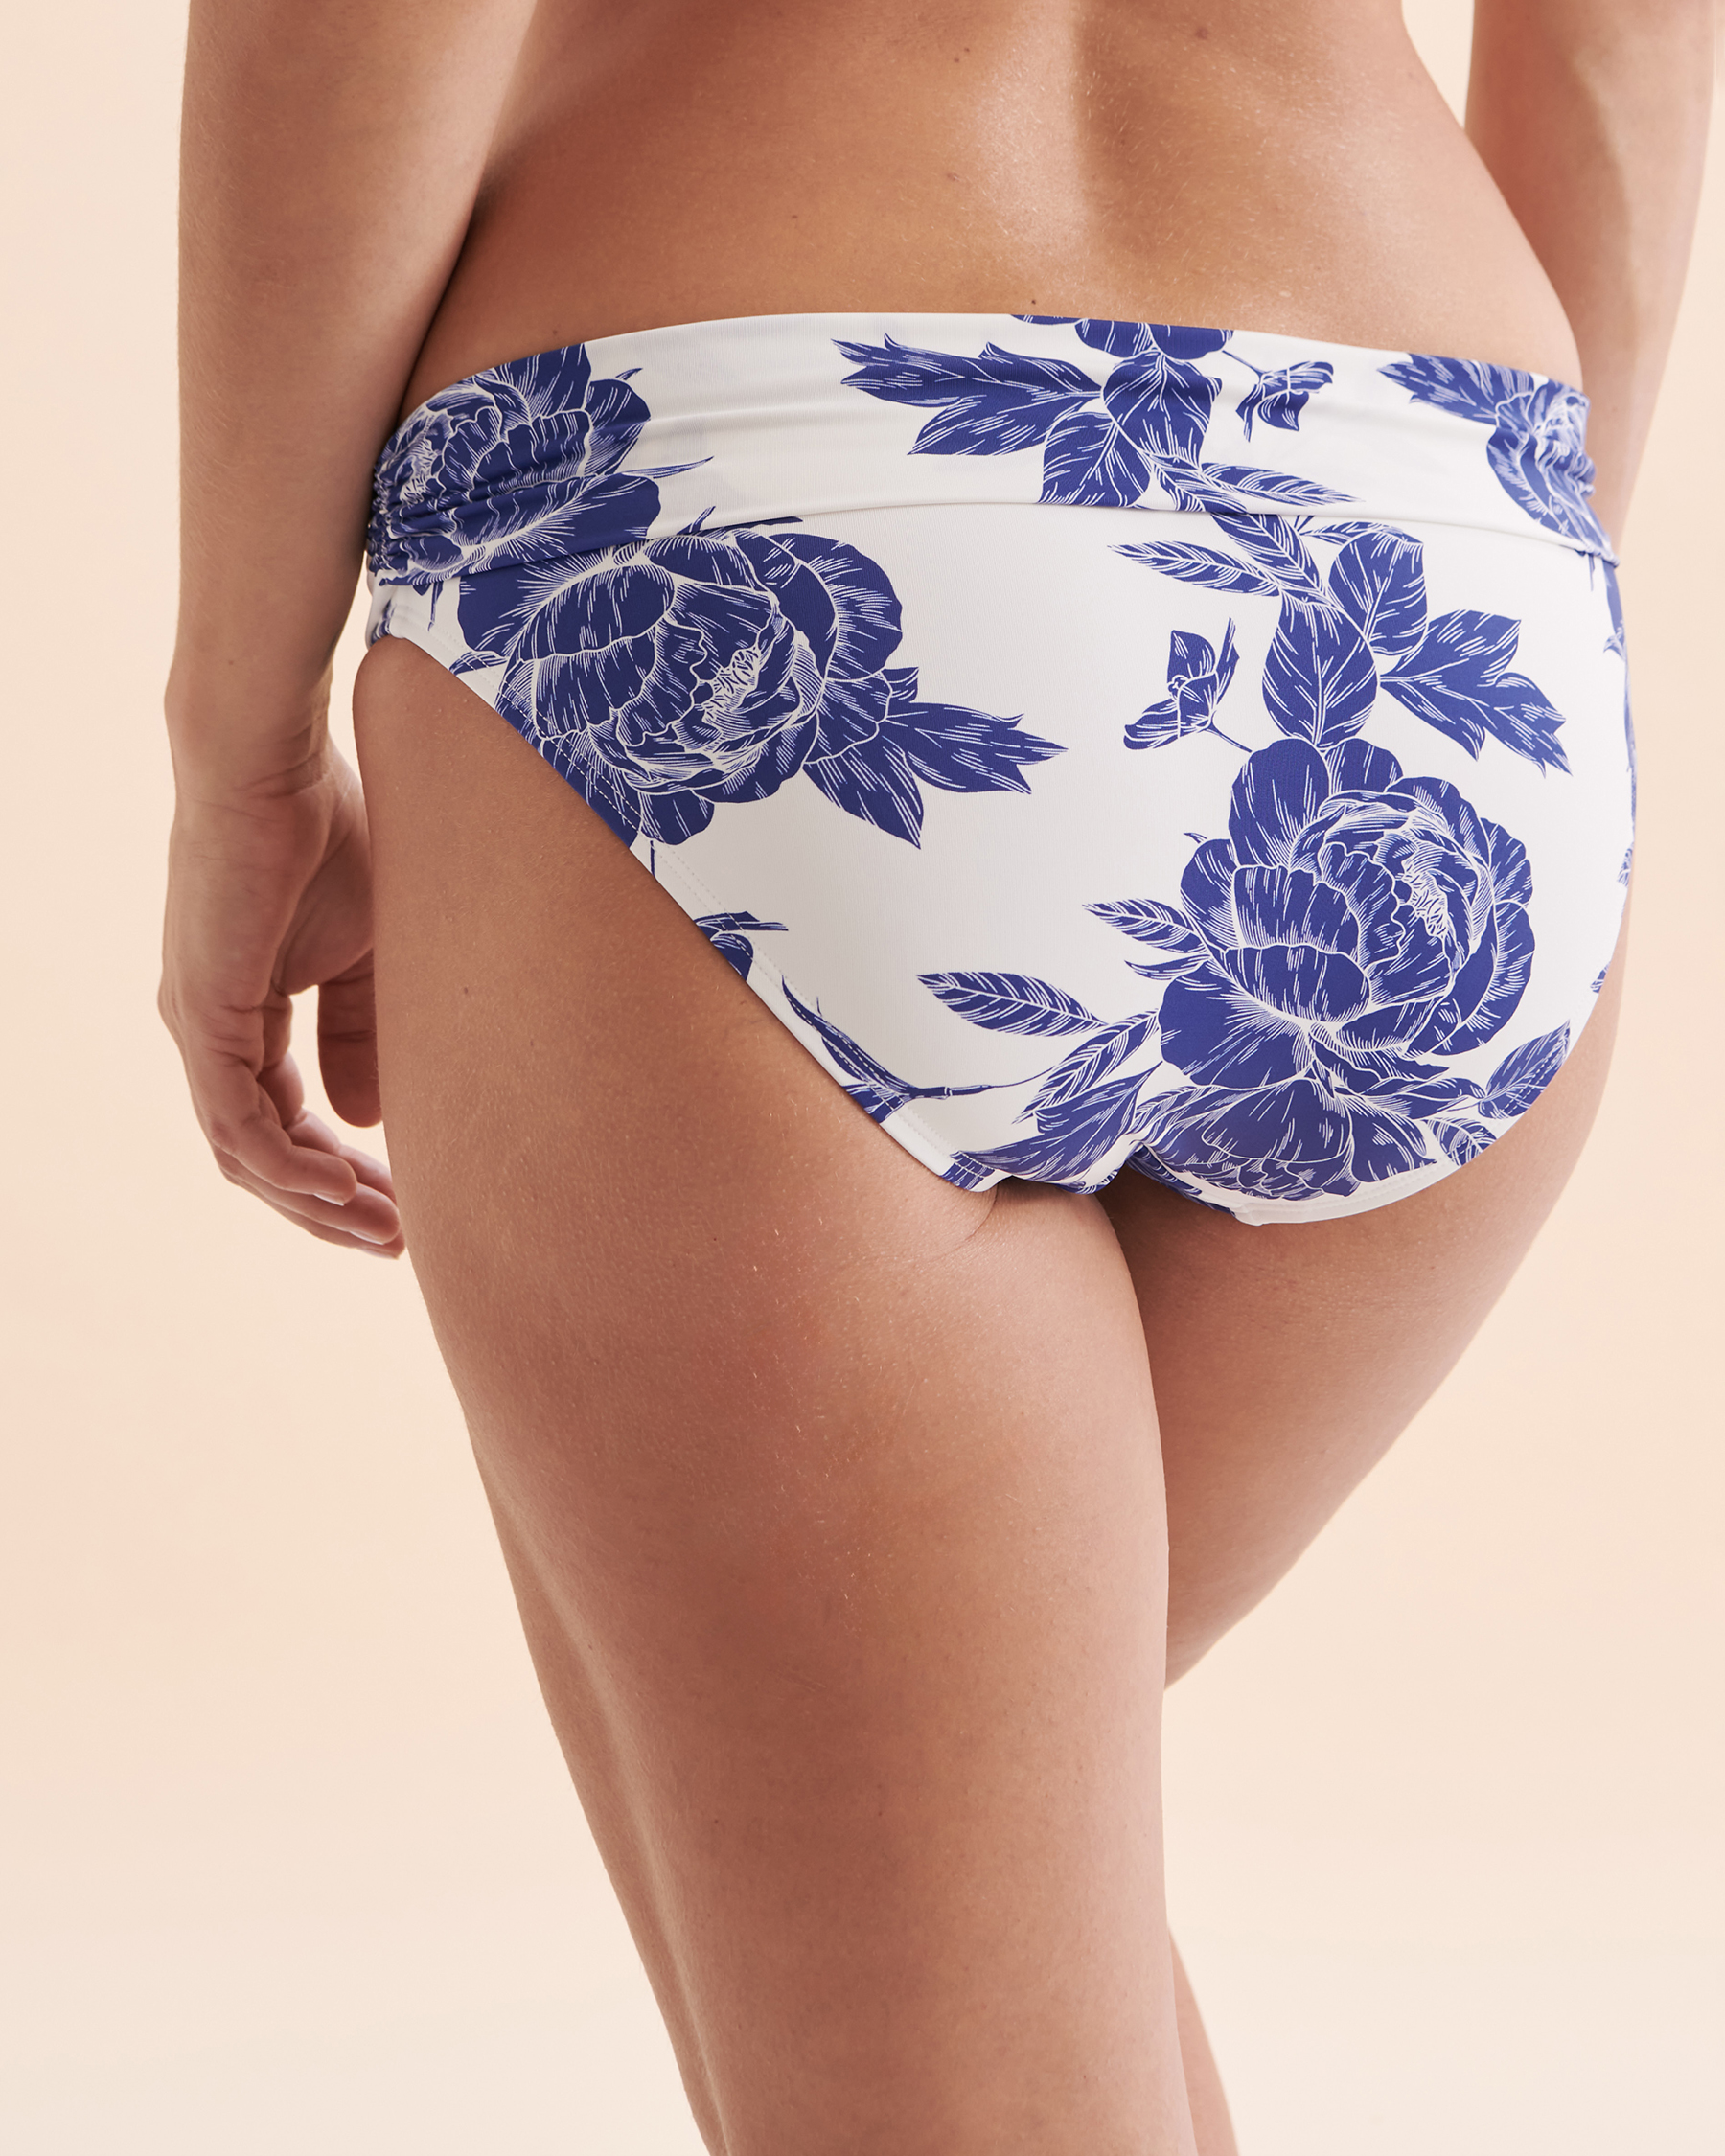 TURQUOISE COUTURE Bas de bikini bande de taille pliée Floral Fleurs bleues et blanches 01300271 - Voir7